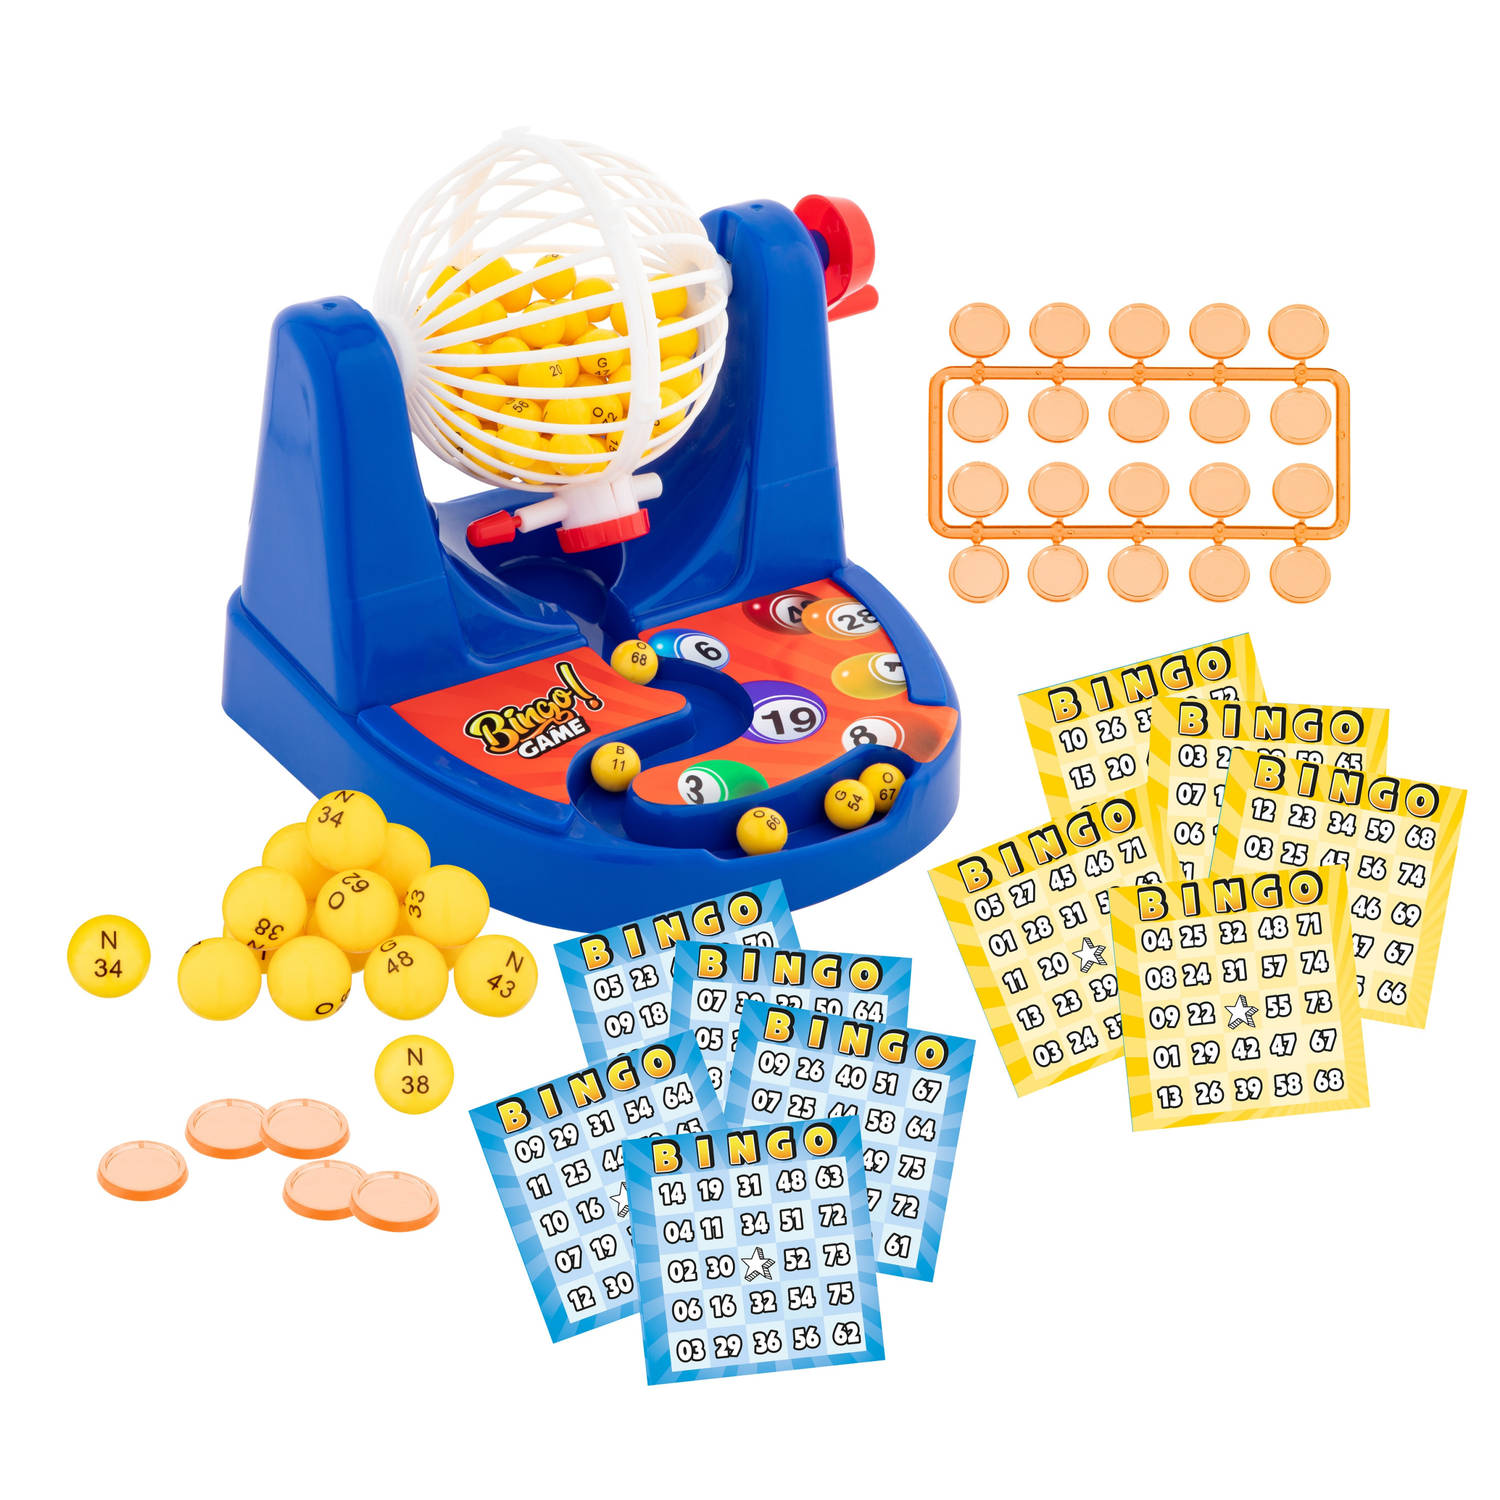 Bingo spel set blauw nummers 1-75 met molen en bingokaarten - Kansspelen | Blokker